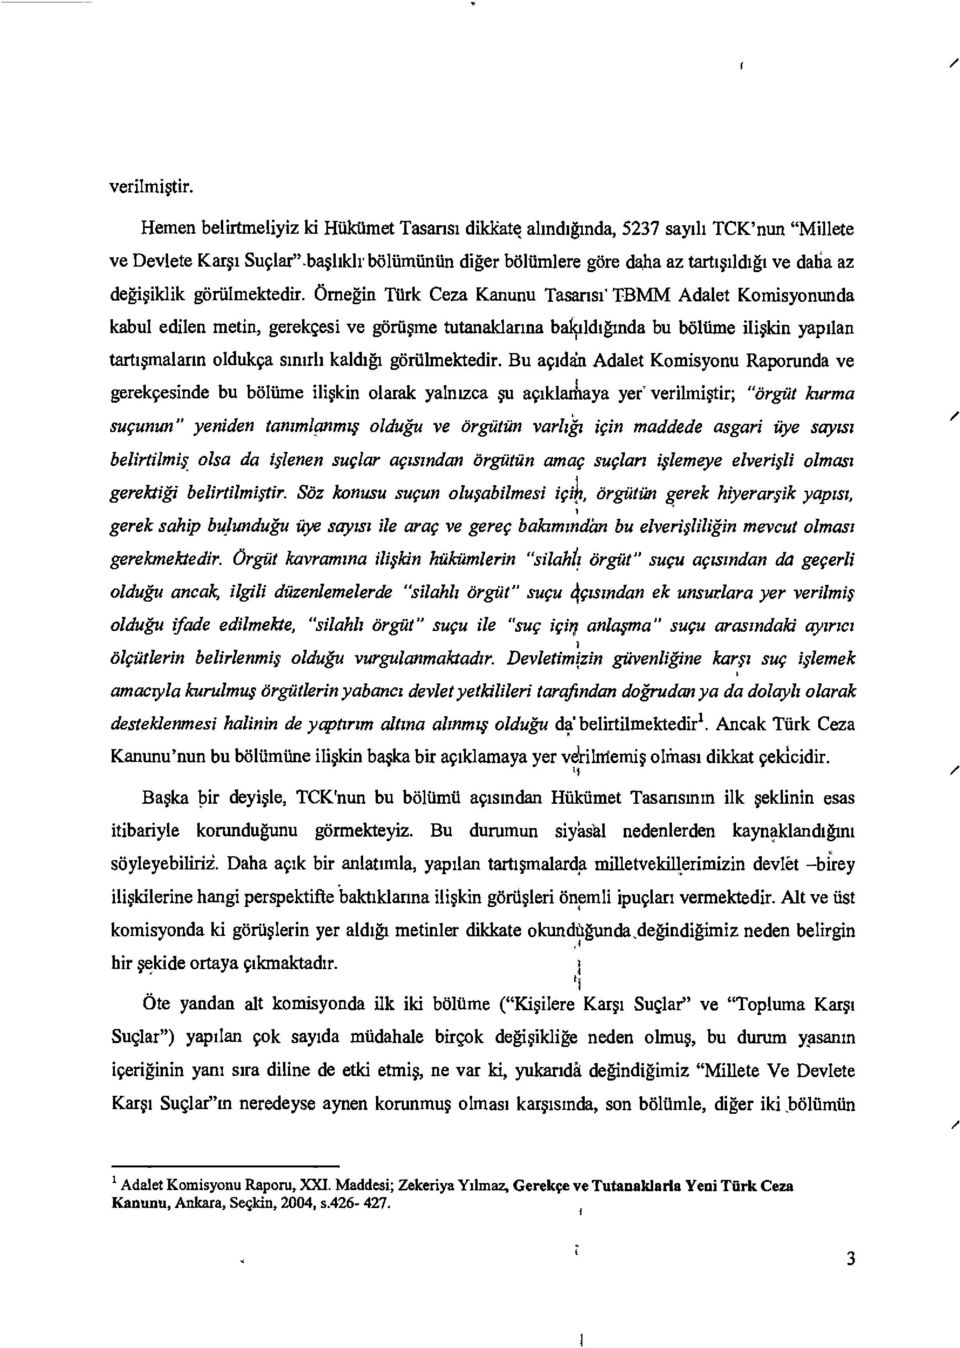 Omegin Turk Ceza Kanunu Tasansi TBMM Adalet Komisyonunda kabul edilen metin, gerekgesi ye goriisme tutanaldarma balcildiginda bu baltime Riskin yaptlan tartismalarm oldukca smith kaldigi